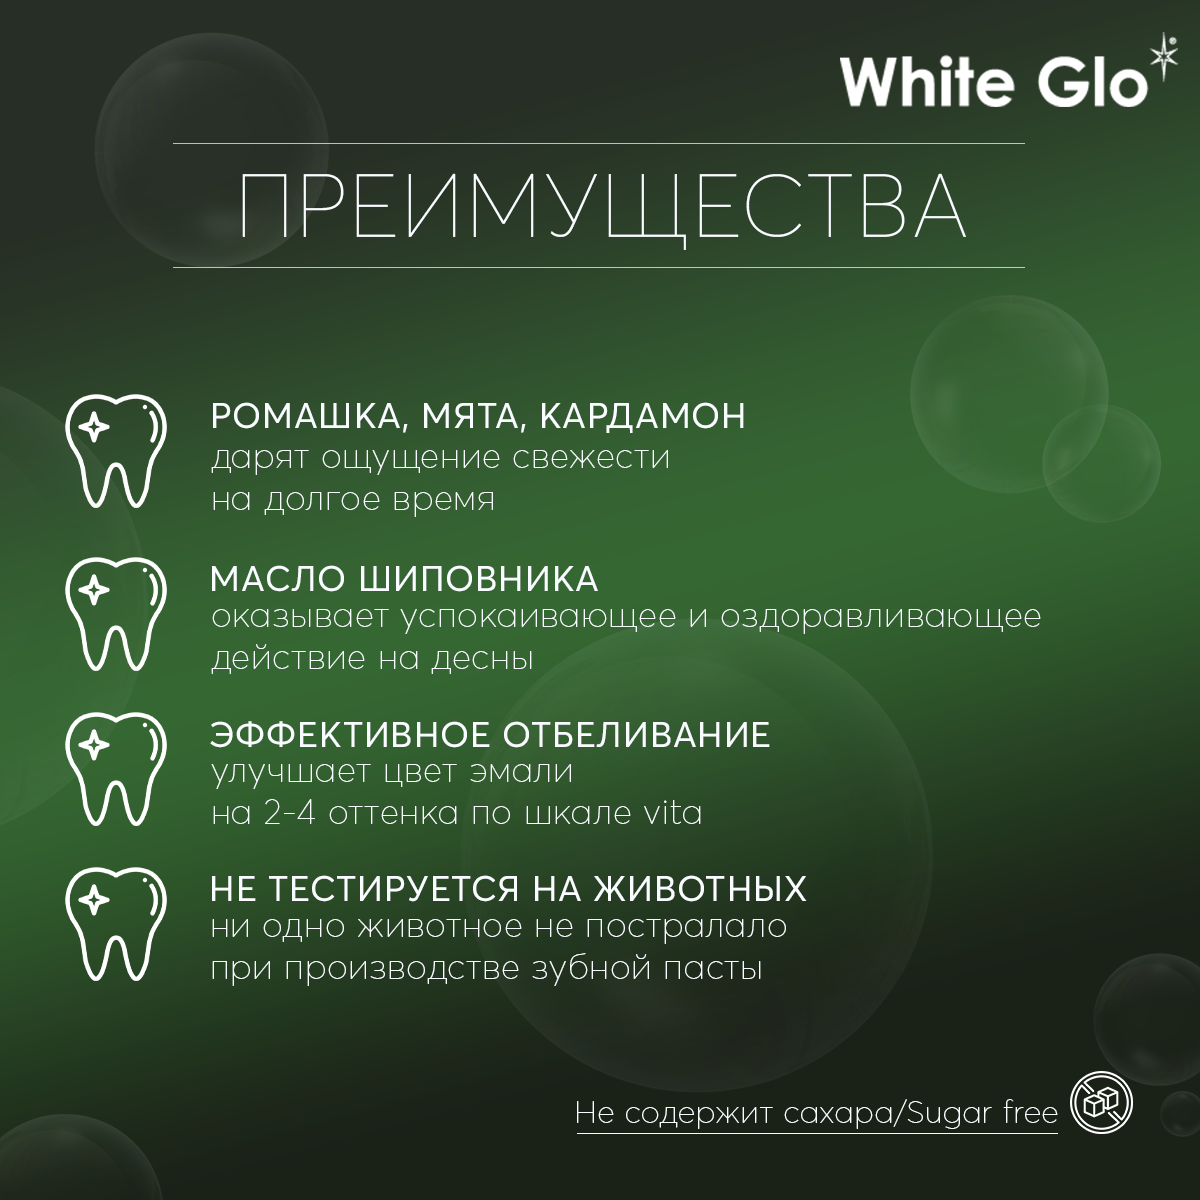 Зубная паста White Glo натуральная белизна, 100гр 